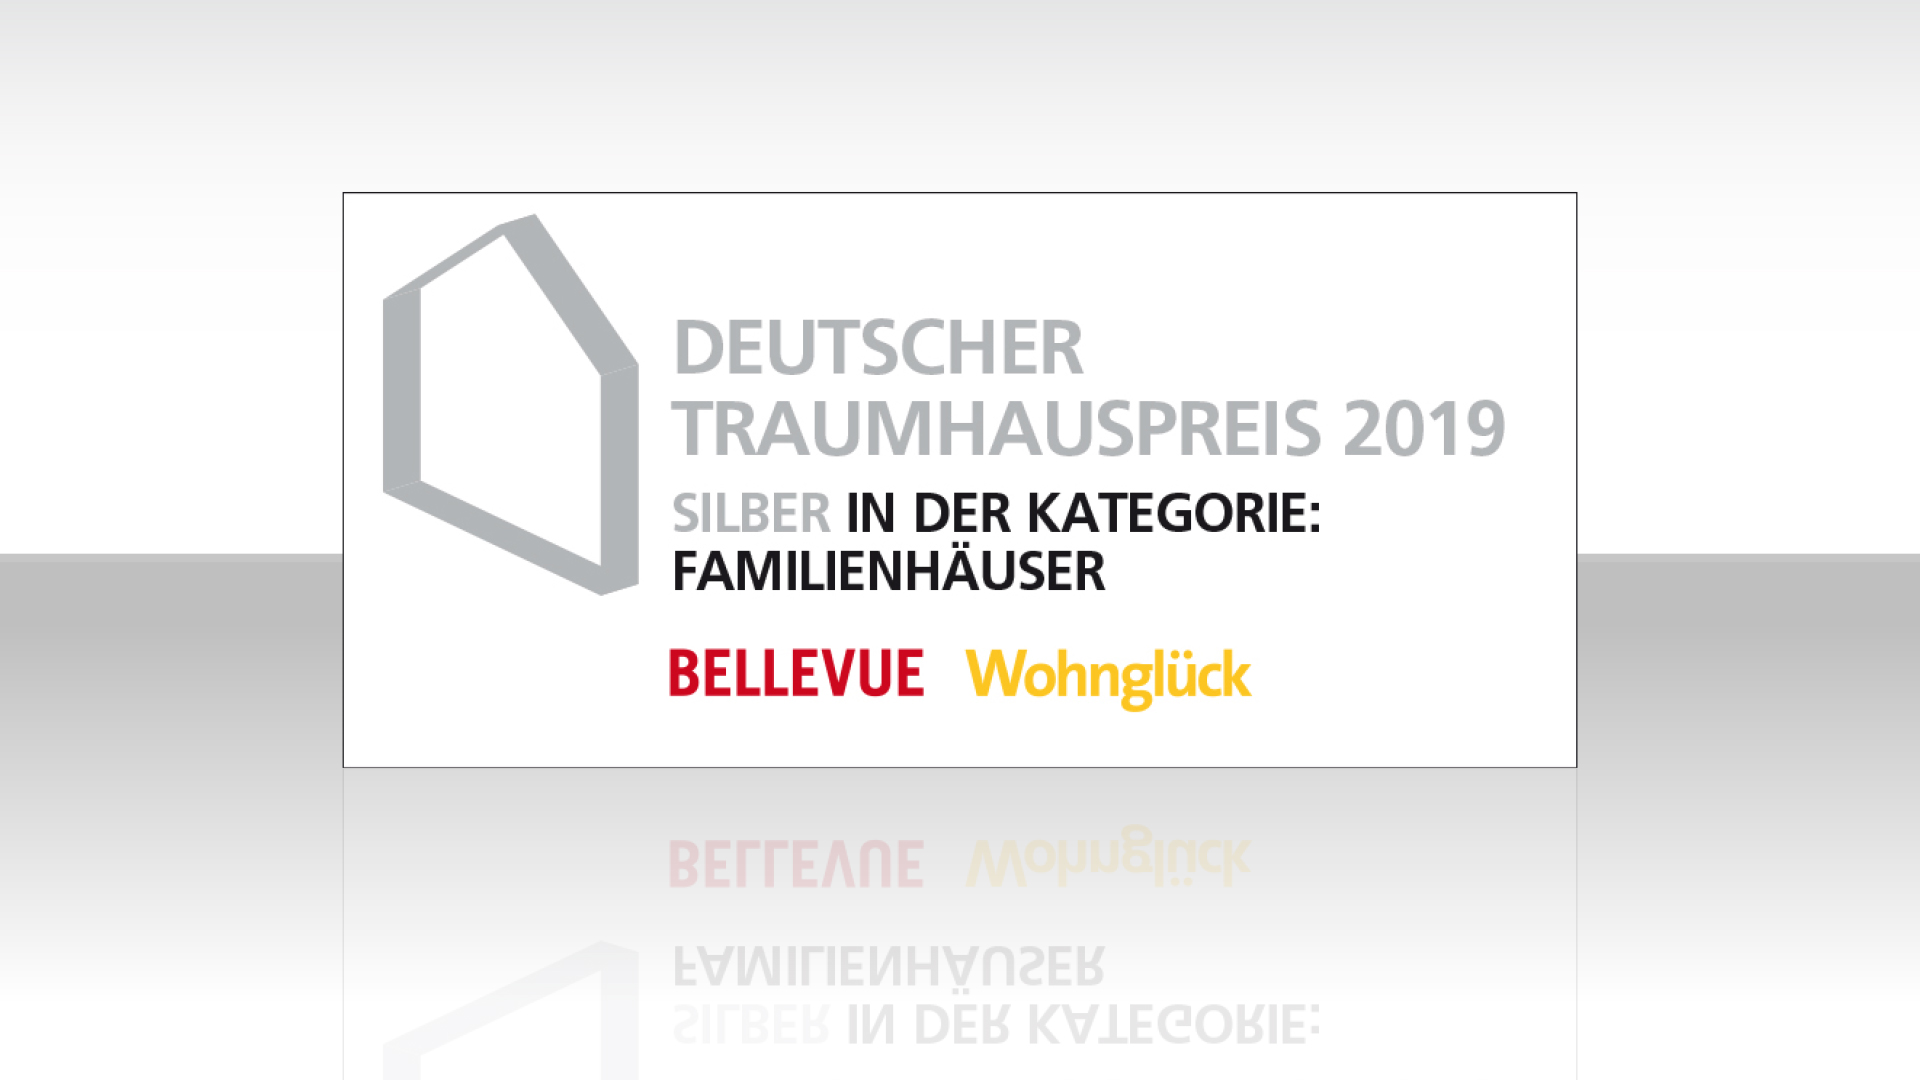 Haus Poschmann von BAUMEISTER-HAUS erreicht Silber beim Deutschen Traumhauspreis 2019. 